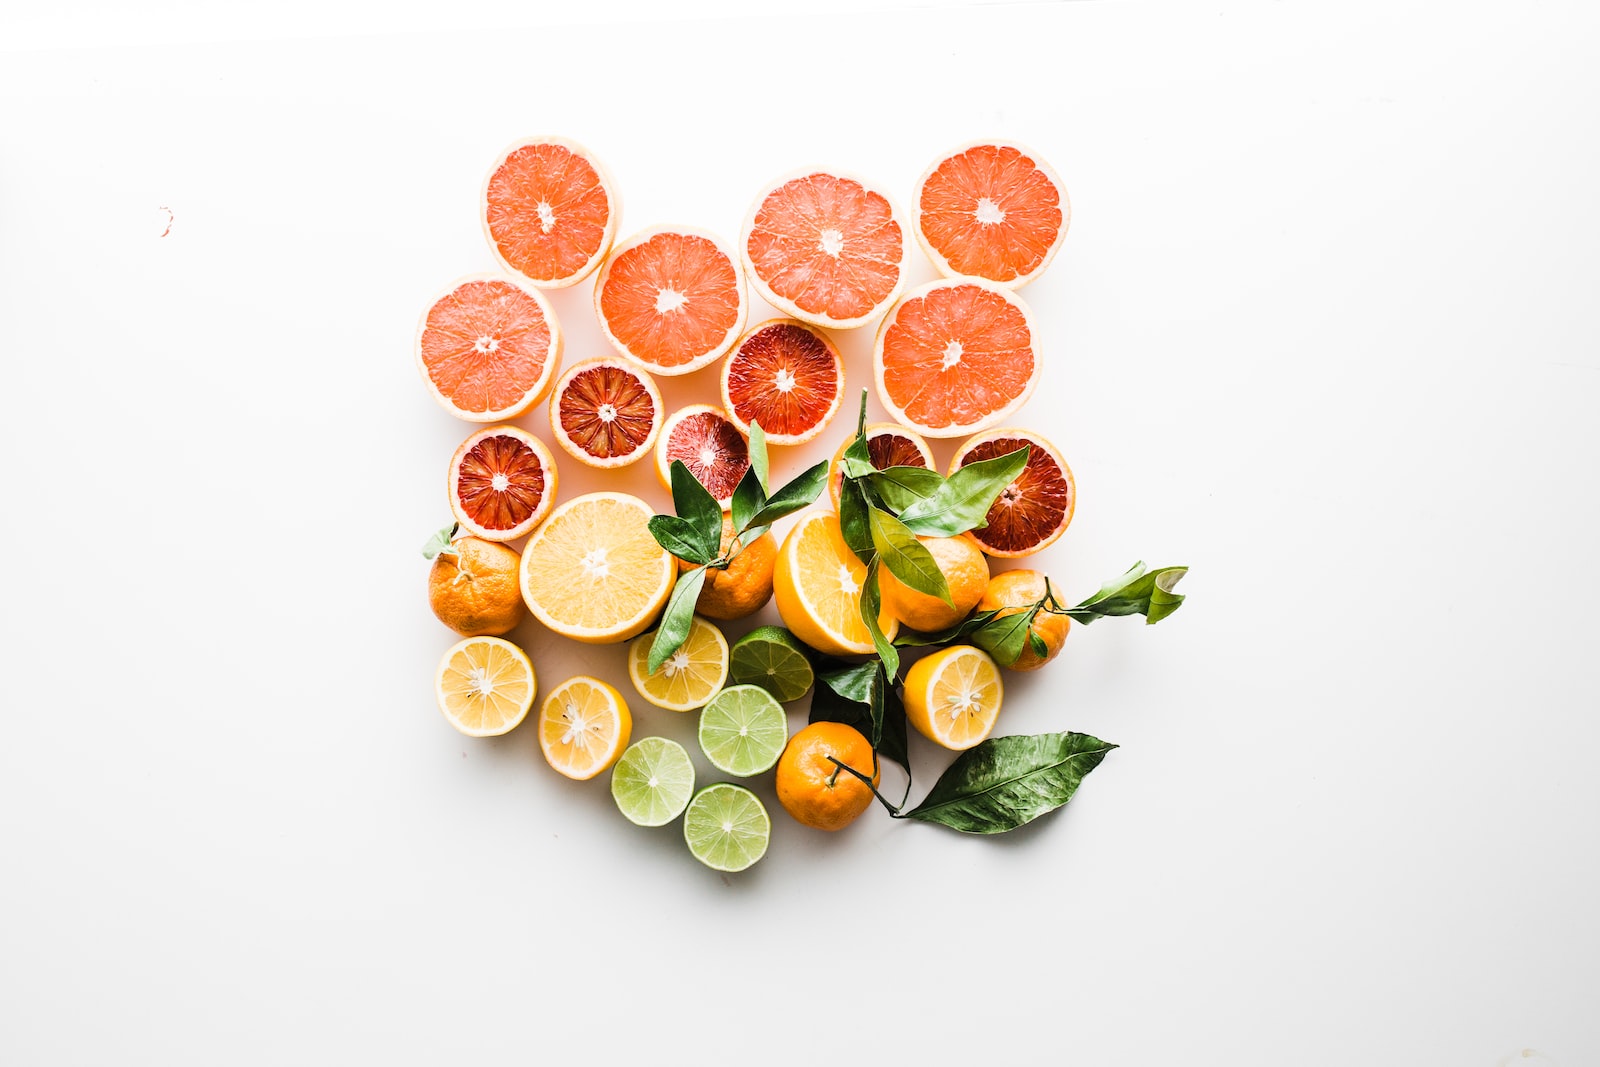 Citrusové plody jsou zdrojem flavonoidů